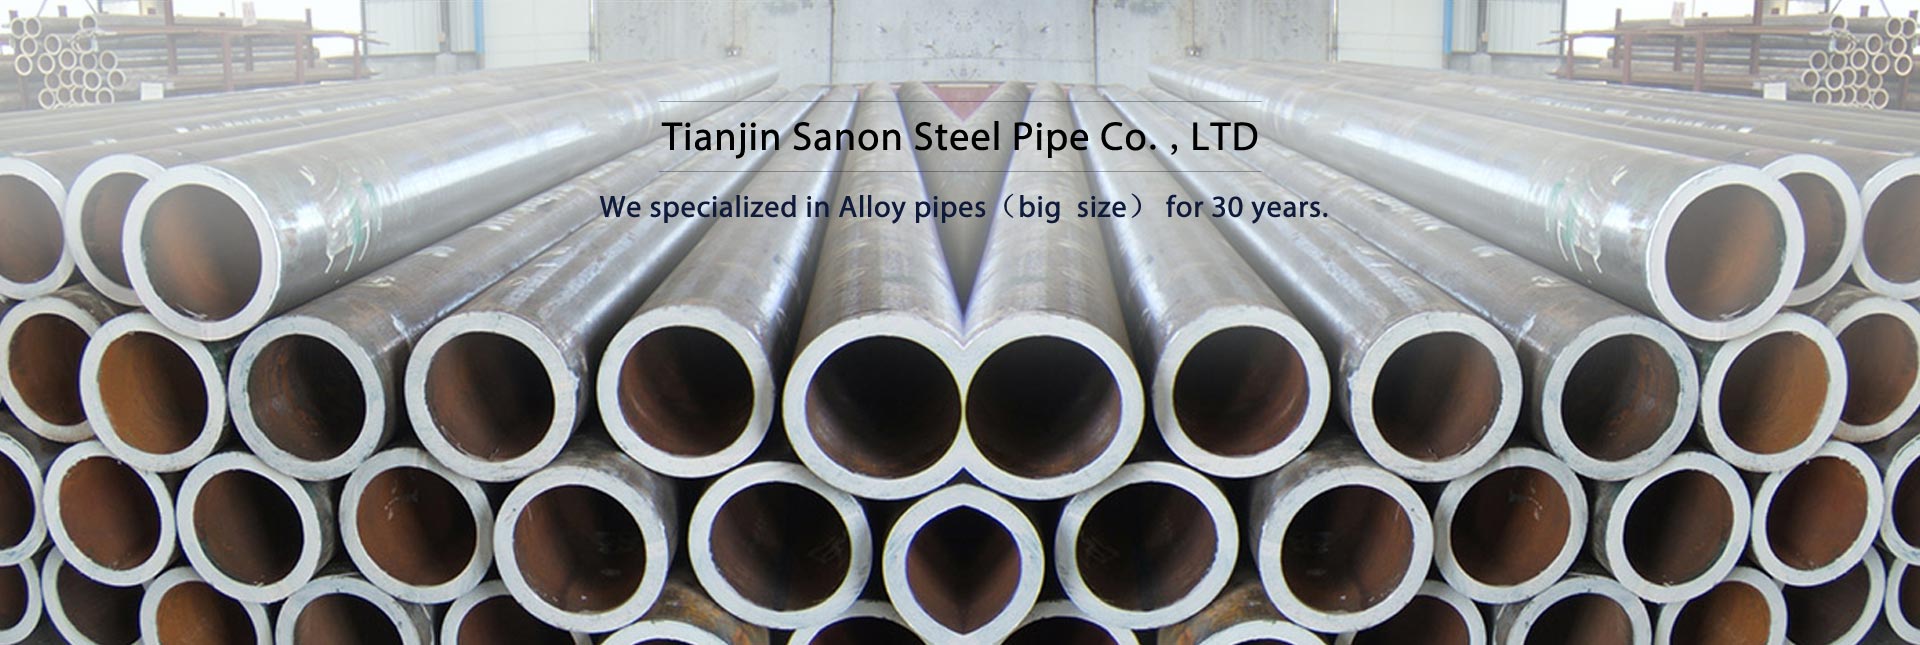 seamless steel tubes alang sa high-pressure boiler